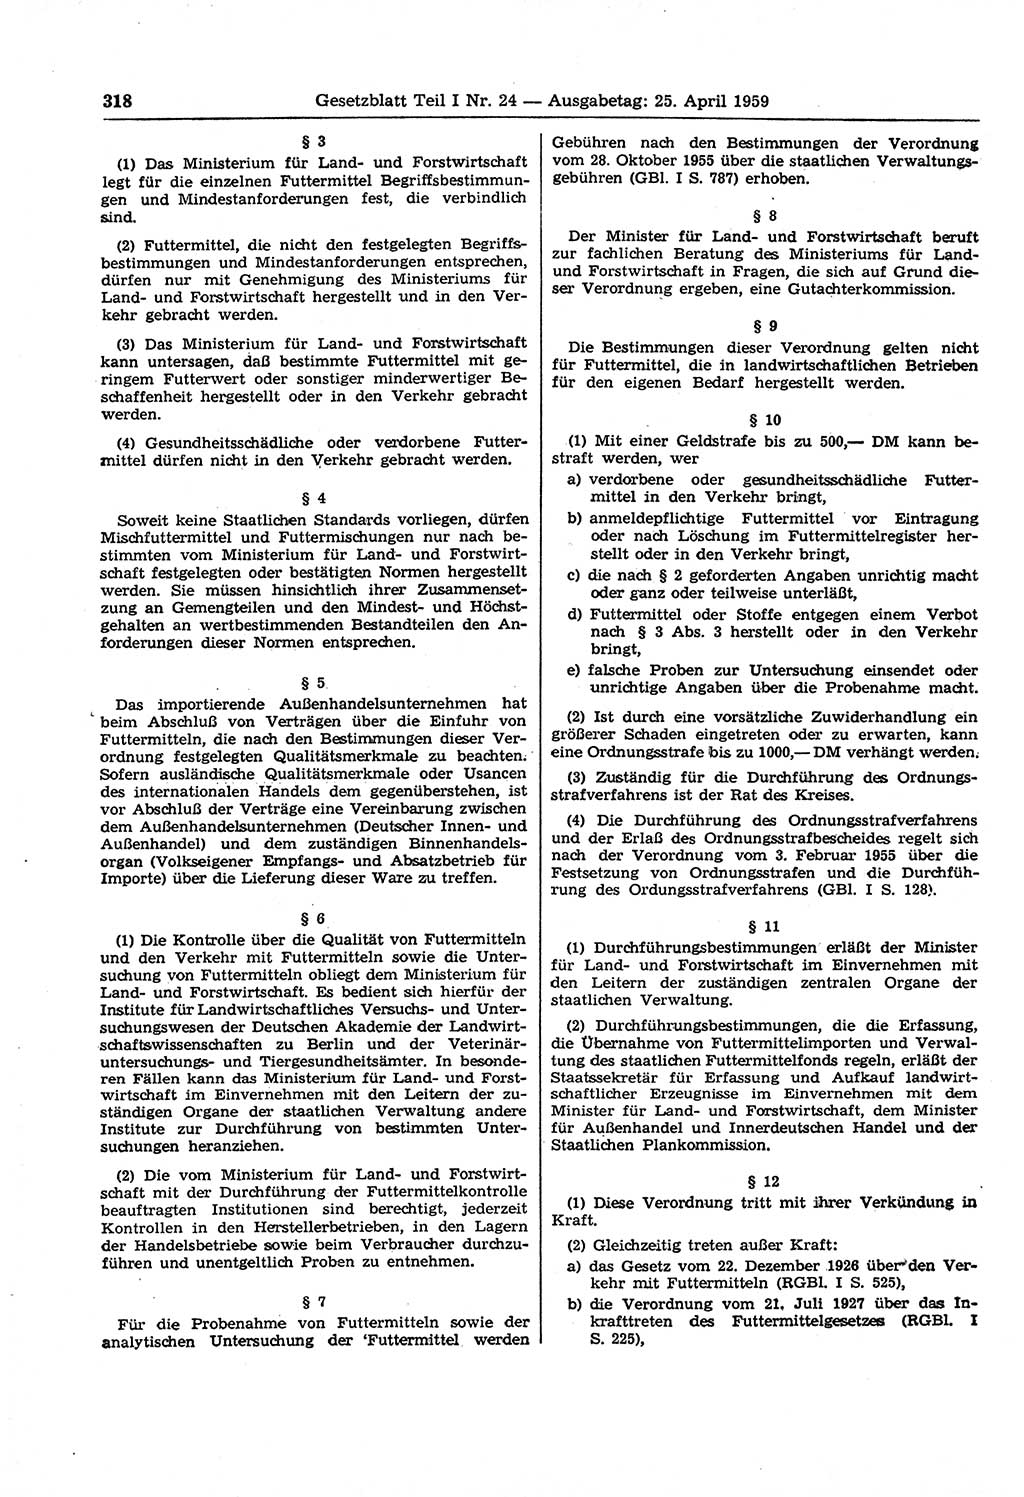 Gesetzblatt (GBl.) der Deutschen Demokratischen Republik (DDR) Teil Ⅰ 1959, Seite 318 (GBl. DDR Ⅰ 1959, S. 318)